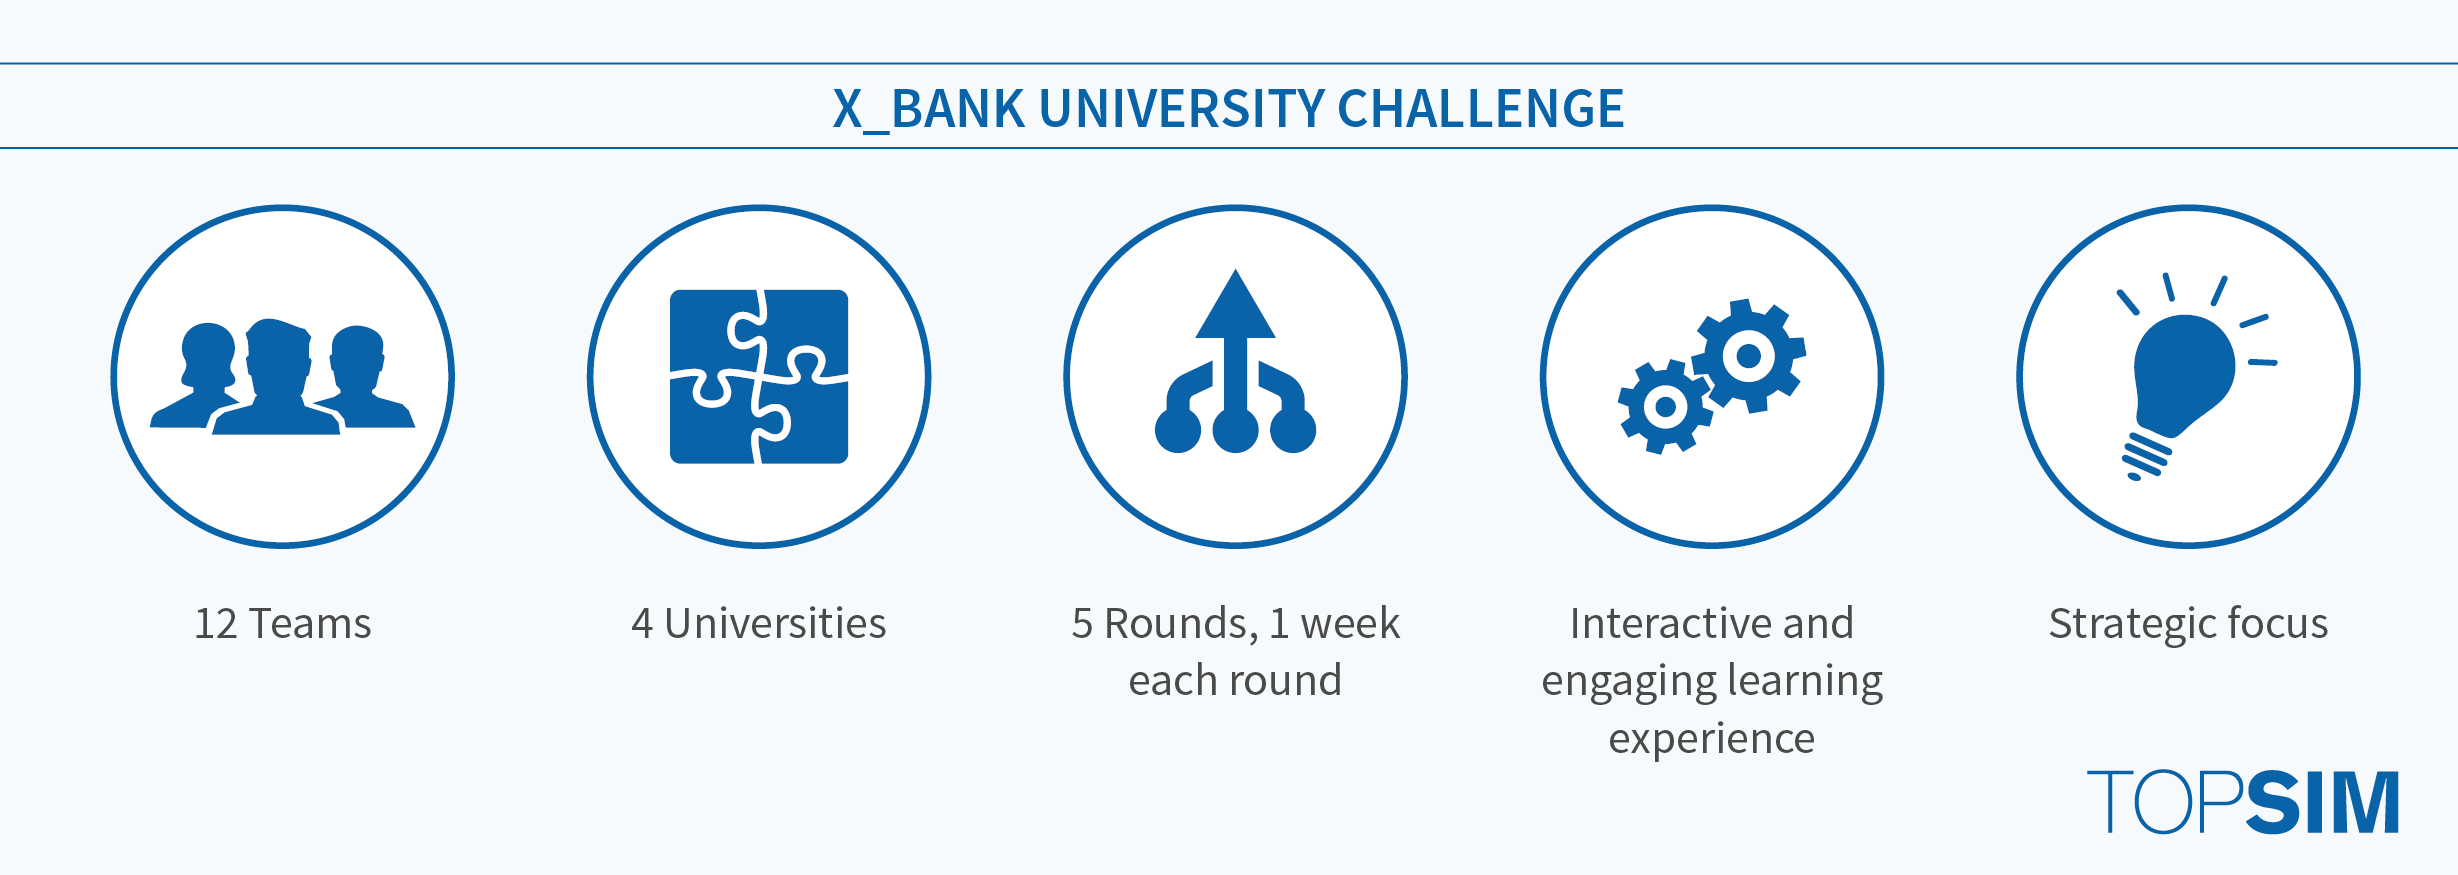 X Bank University Challenge